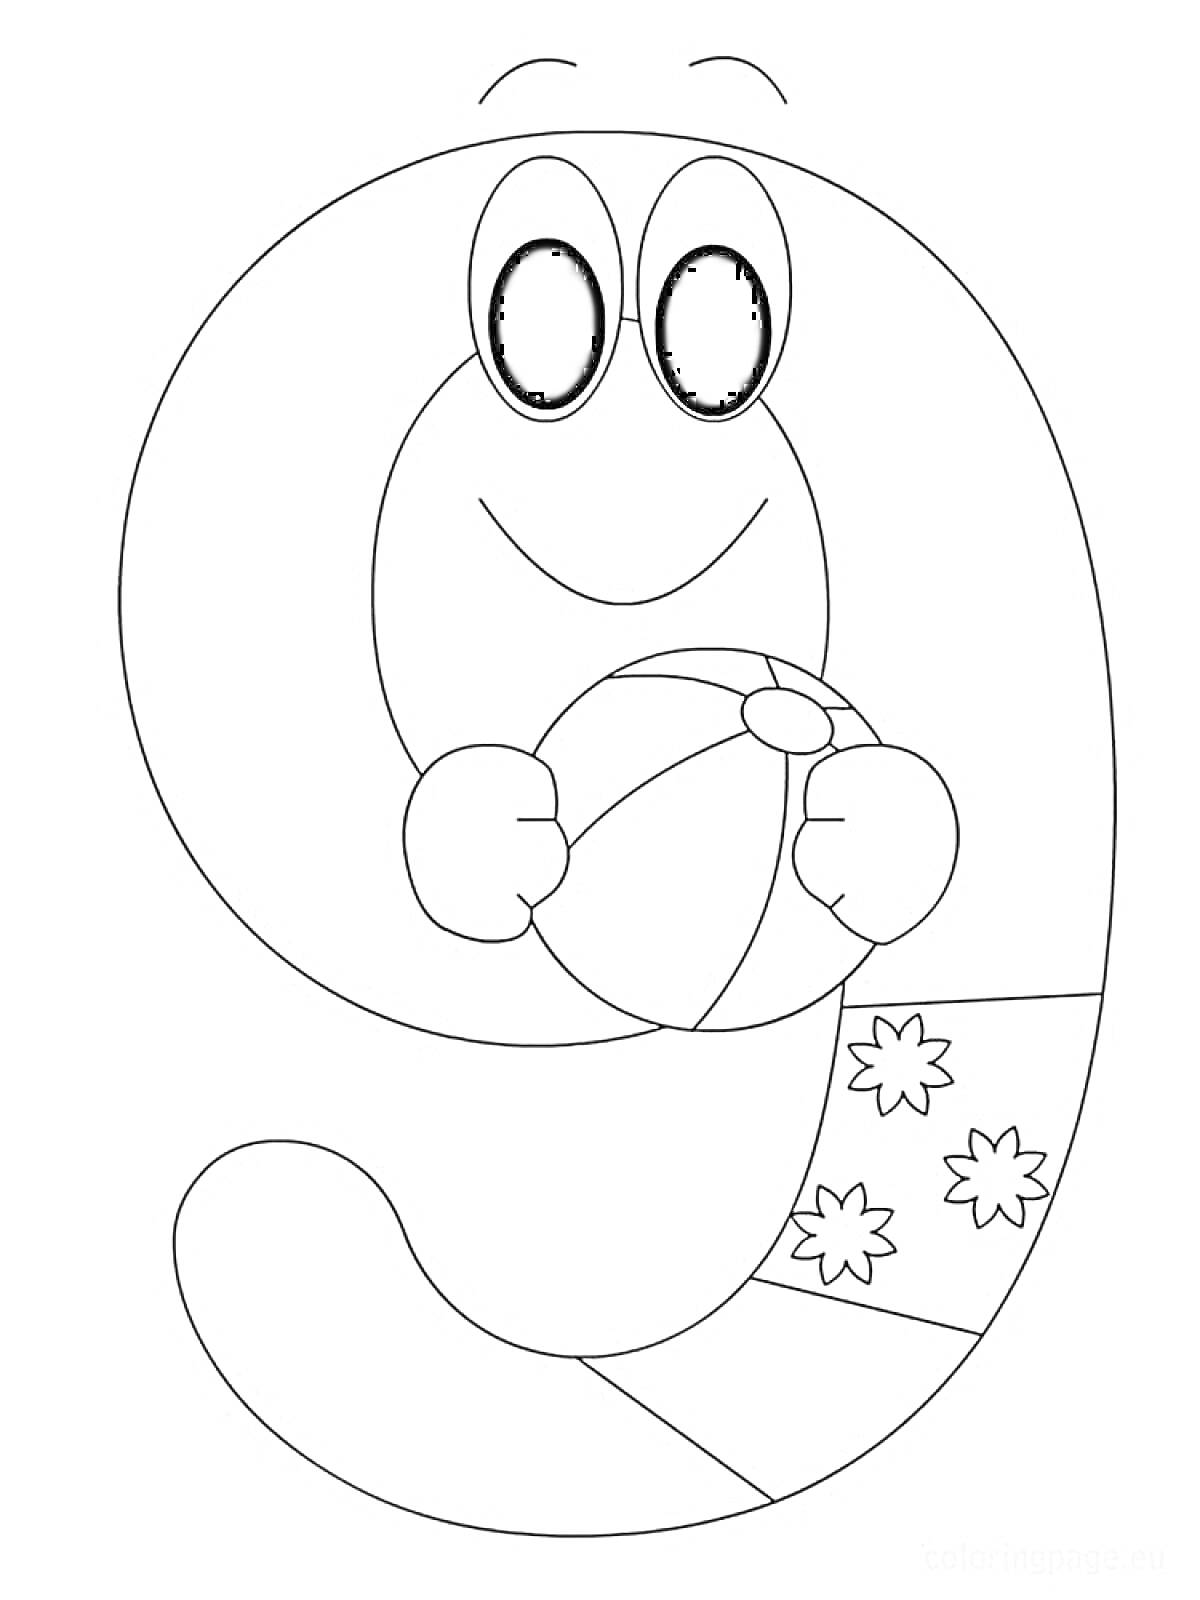 Раскраска Цифра 9 с глазами, держащая пляжный мяч, с цветами на хвосте